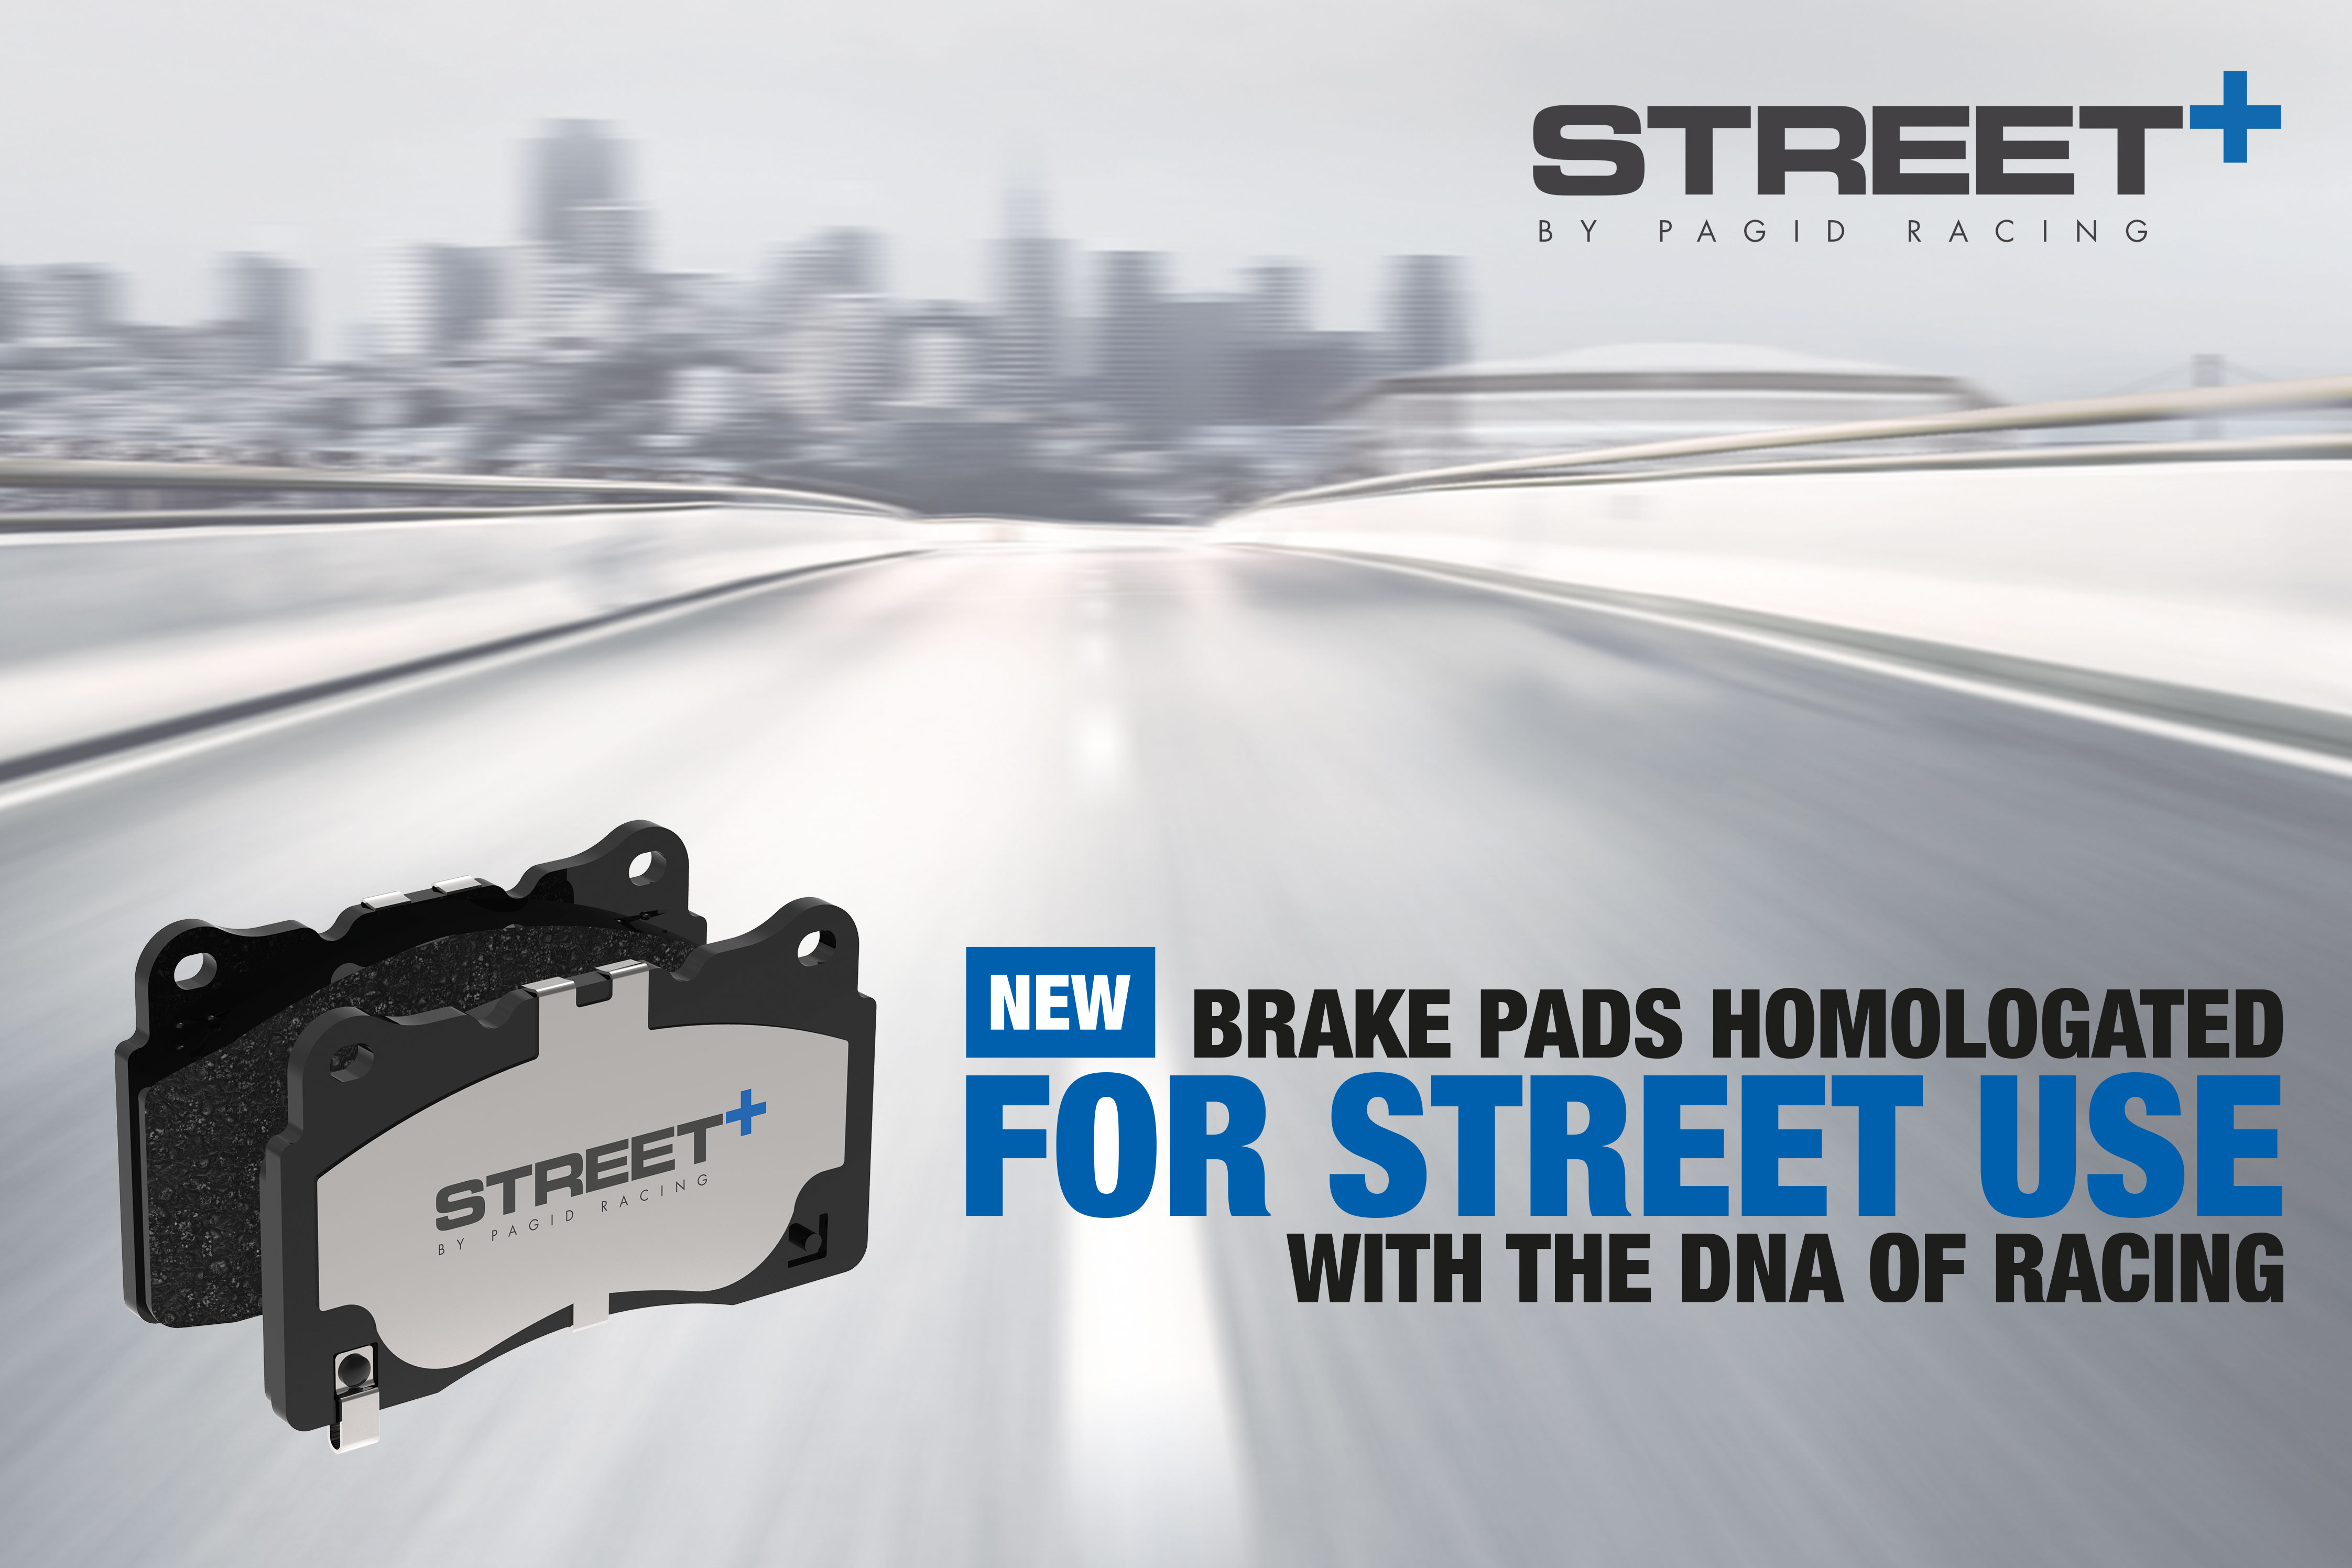 STREET+ Brake Pads